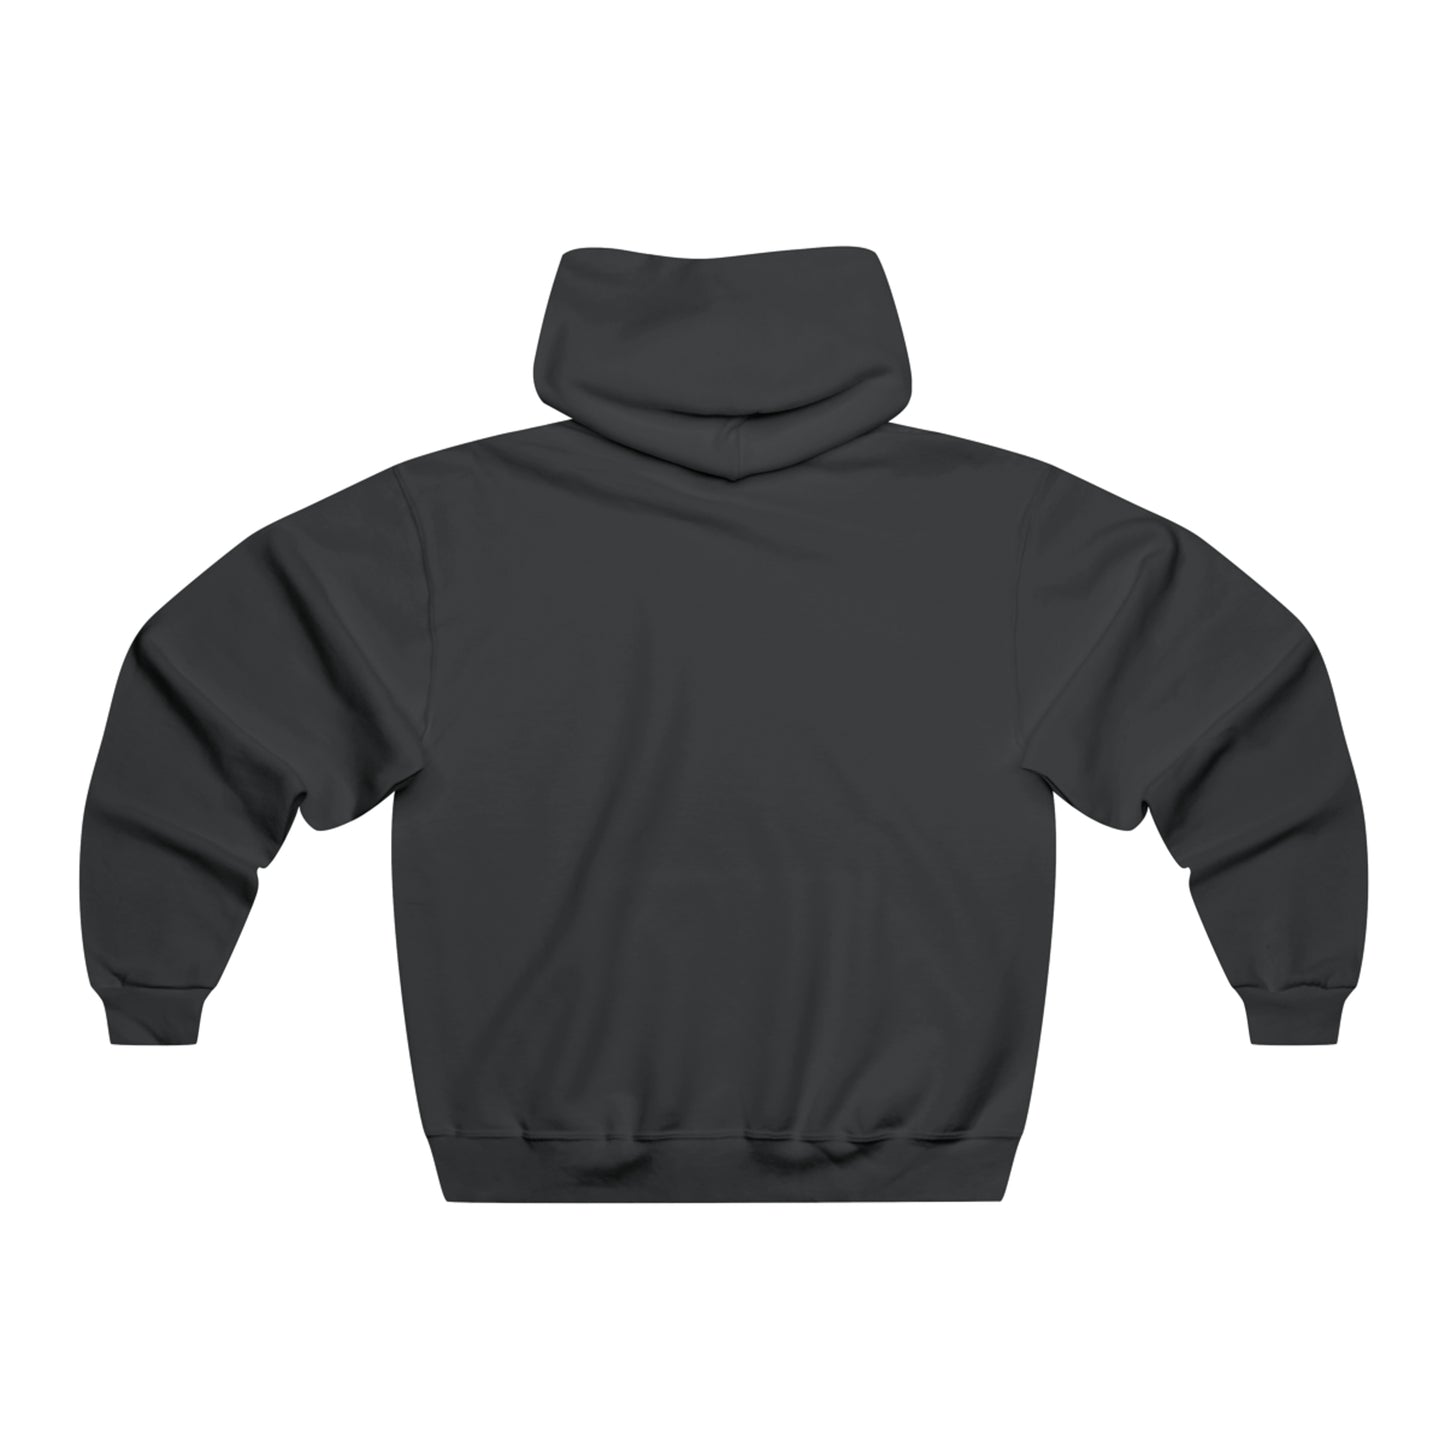 Warwood Tool - Hooded Sweatshirt